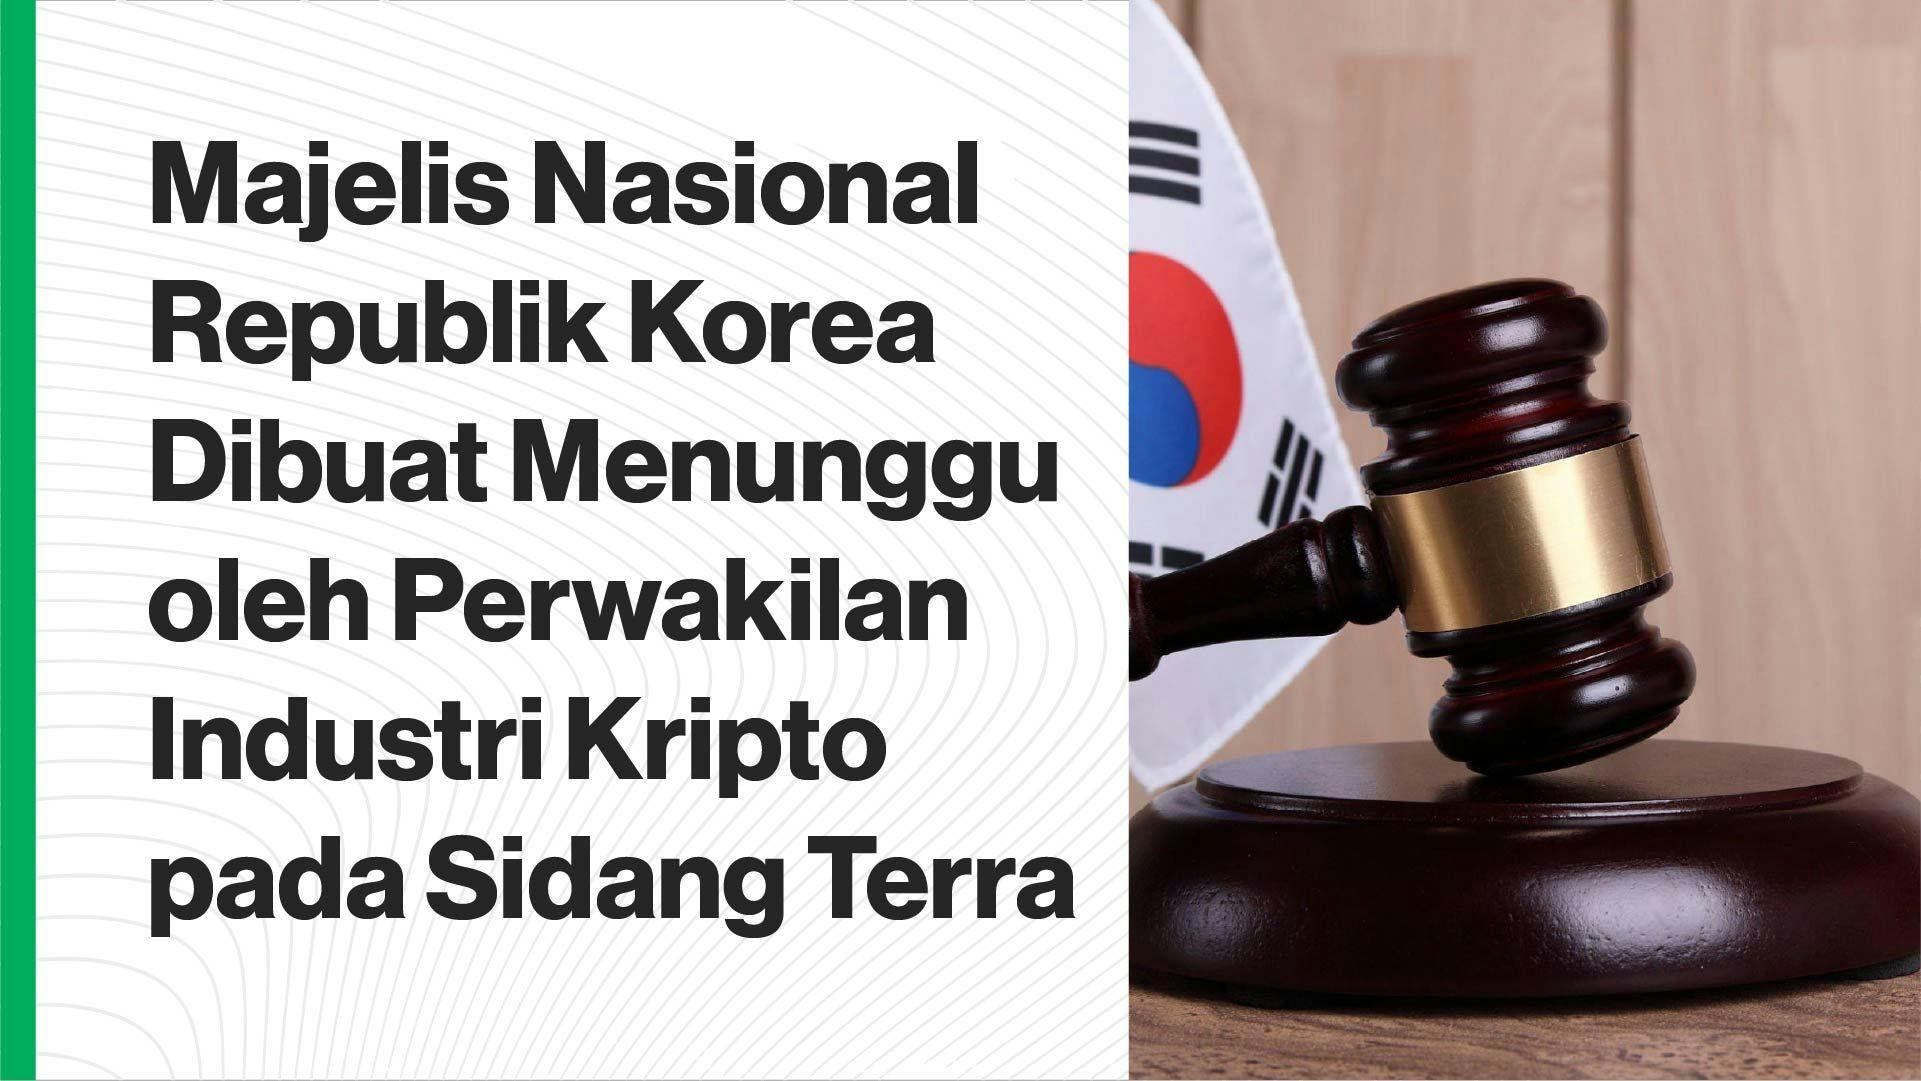 Dua dari lima saksi dari industri kripto yang hadir untuk bersaksi pada sidang Majelis Nasional Republik Korea. (Foto CDI)